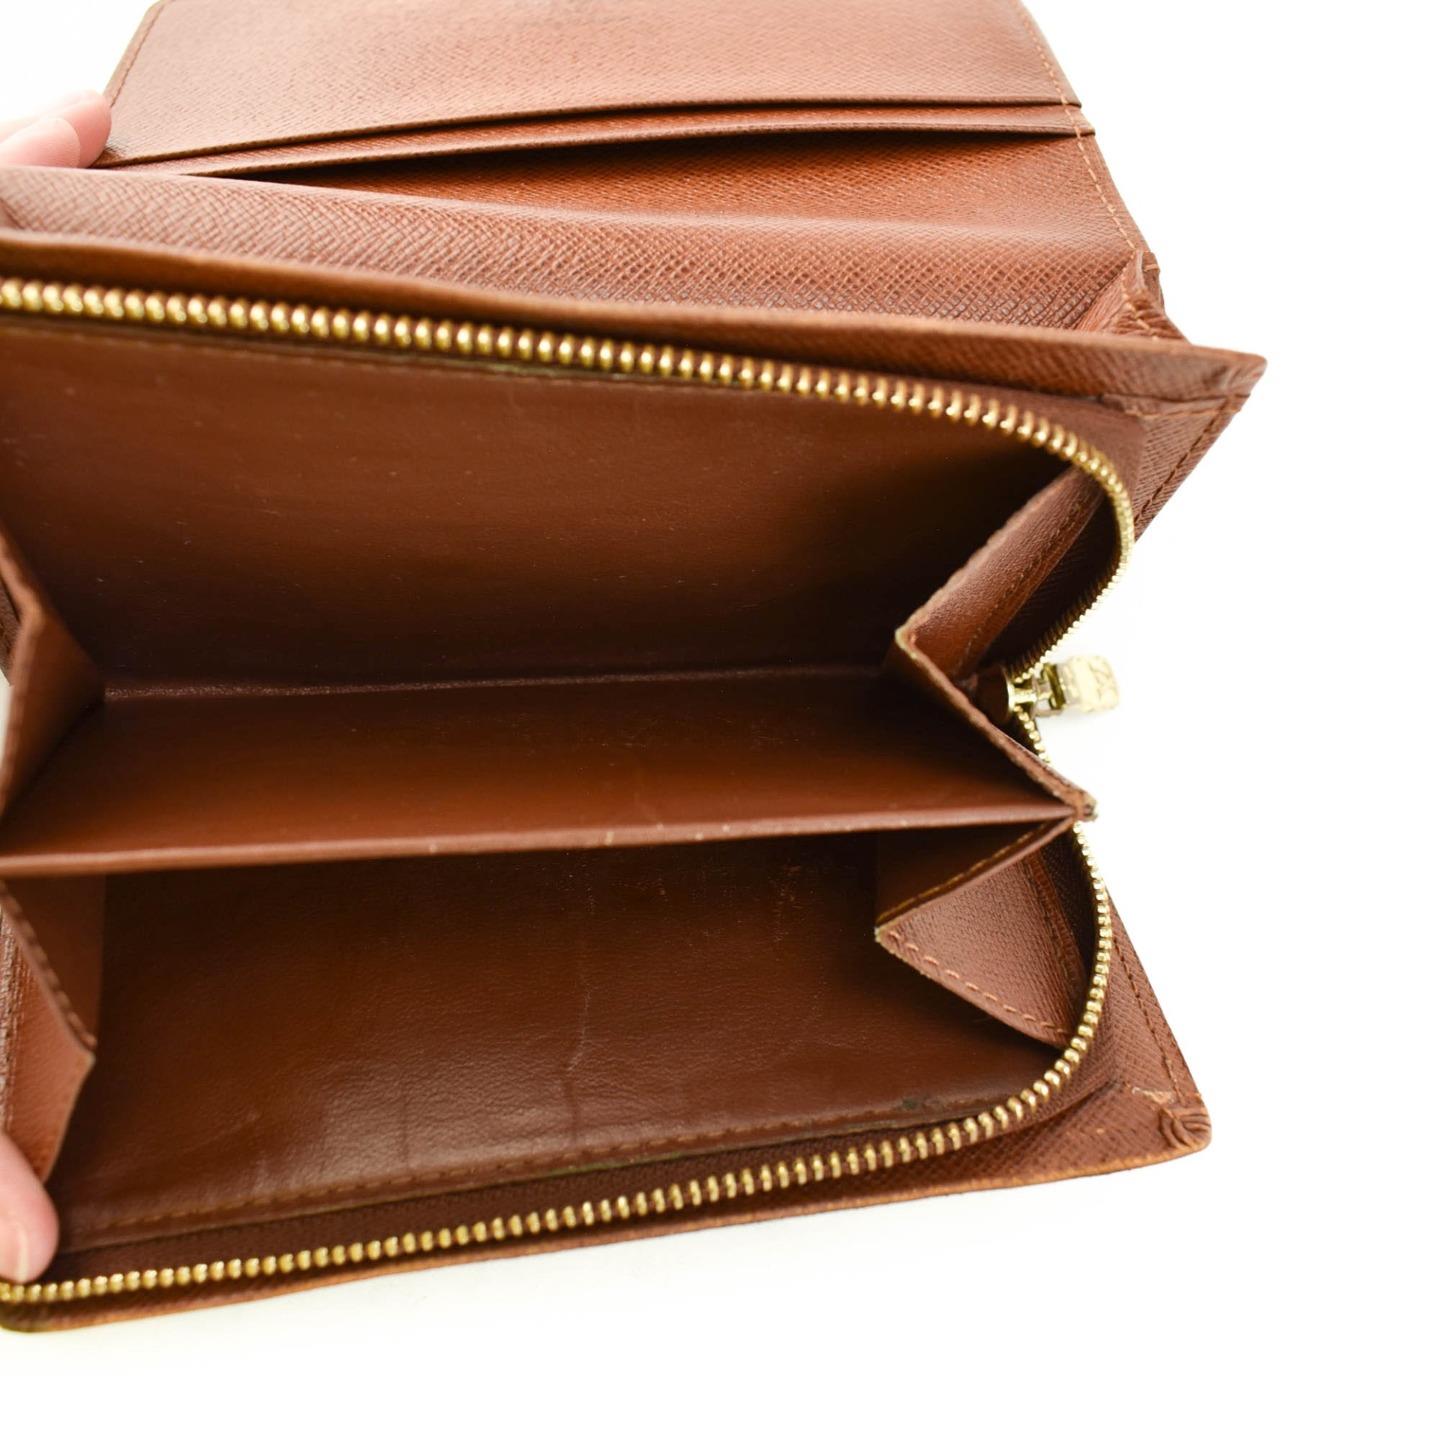 LOUIS VUITTON &quot;Porte Monnaie&quot;: Brown, &quot;LV&quot; Logo & Leather Folding Wallet (vn) | eBay